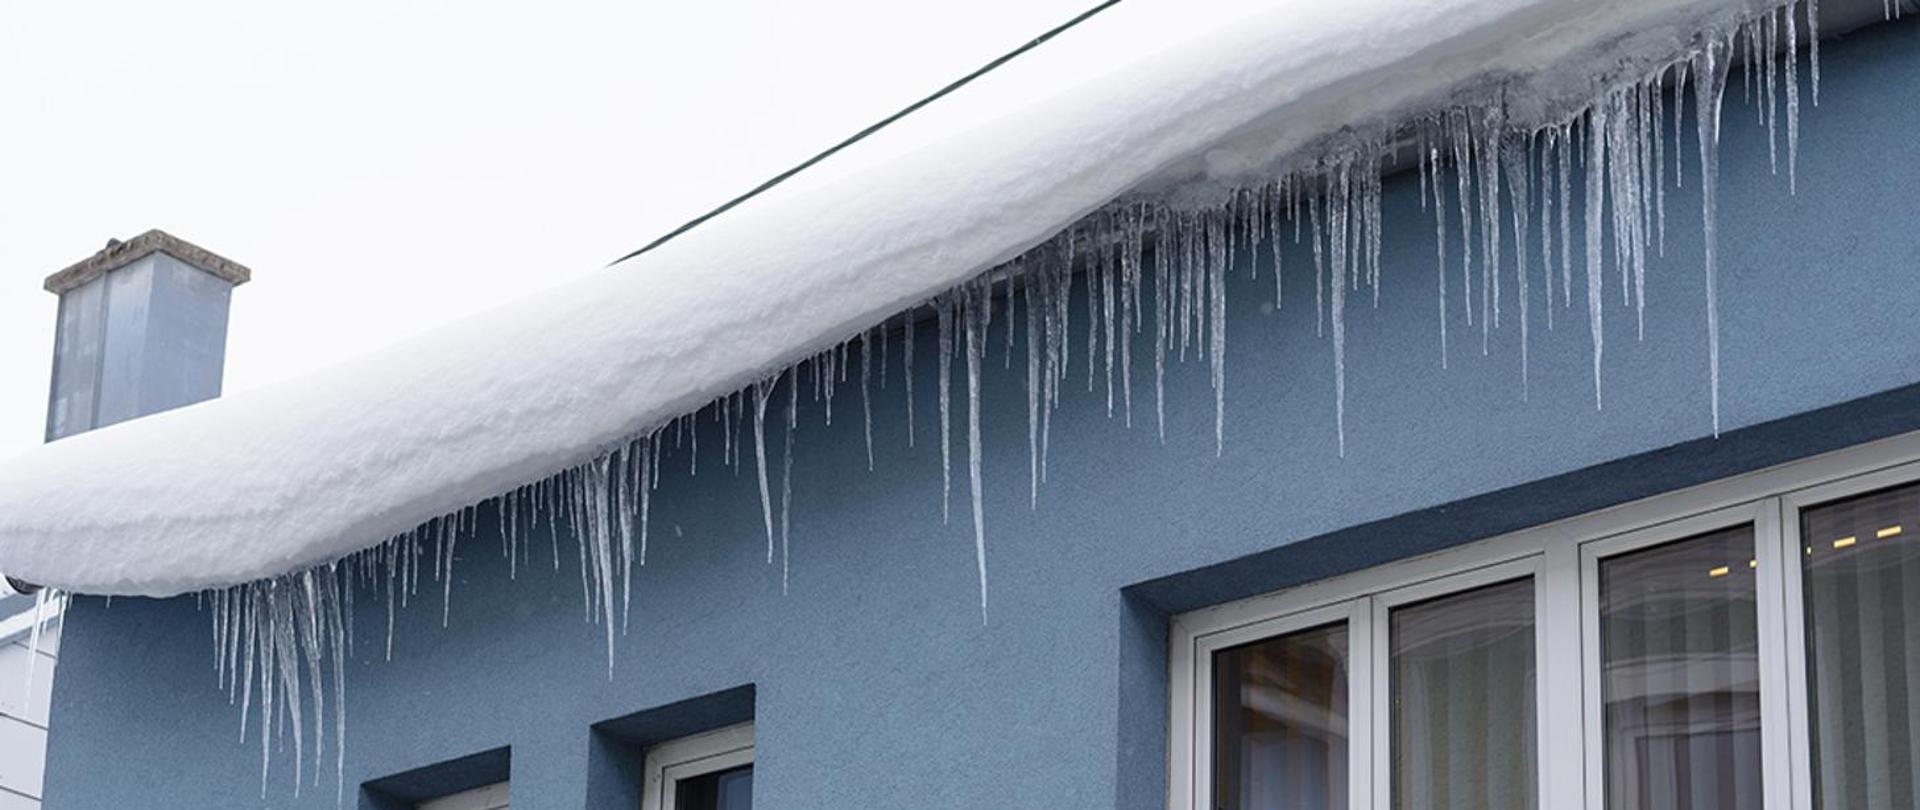 Zdjęcie przedstawia śnieg zalegający na dachu i zamarznięte sople lodu zwisające z dachu